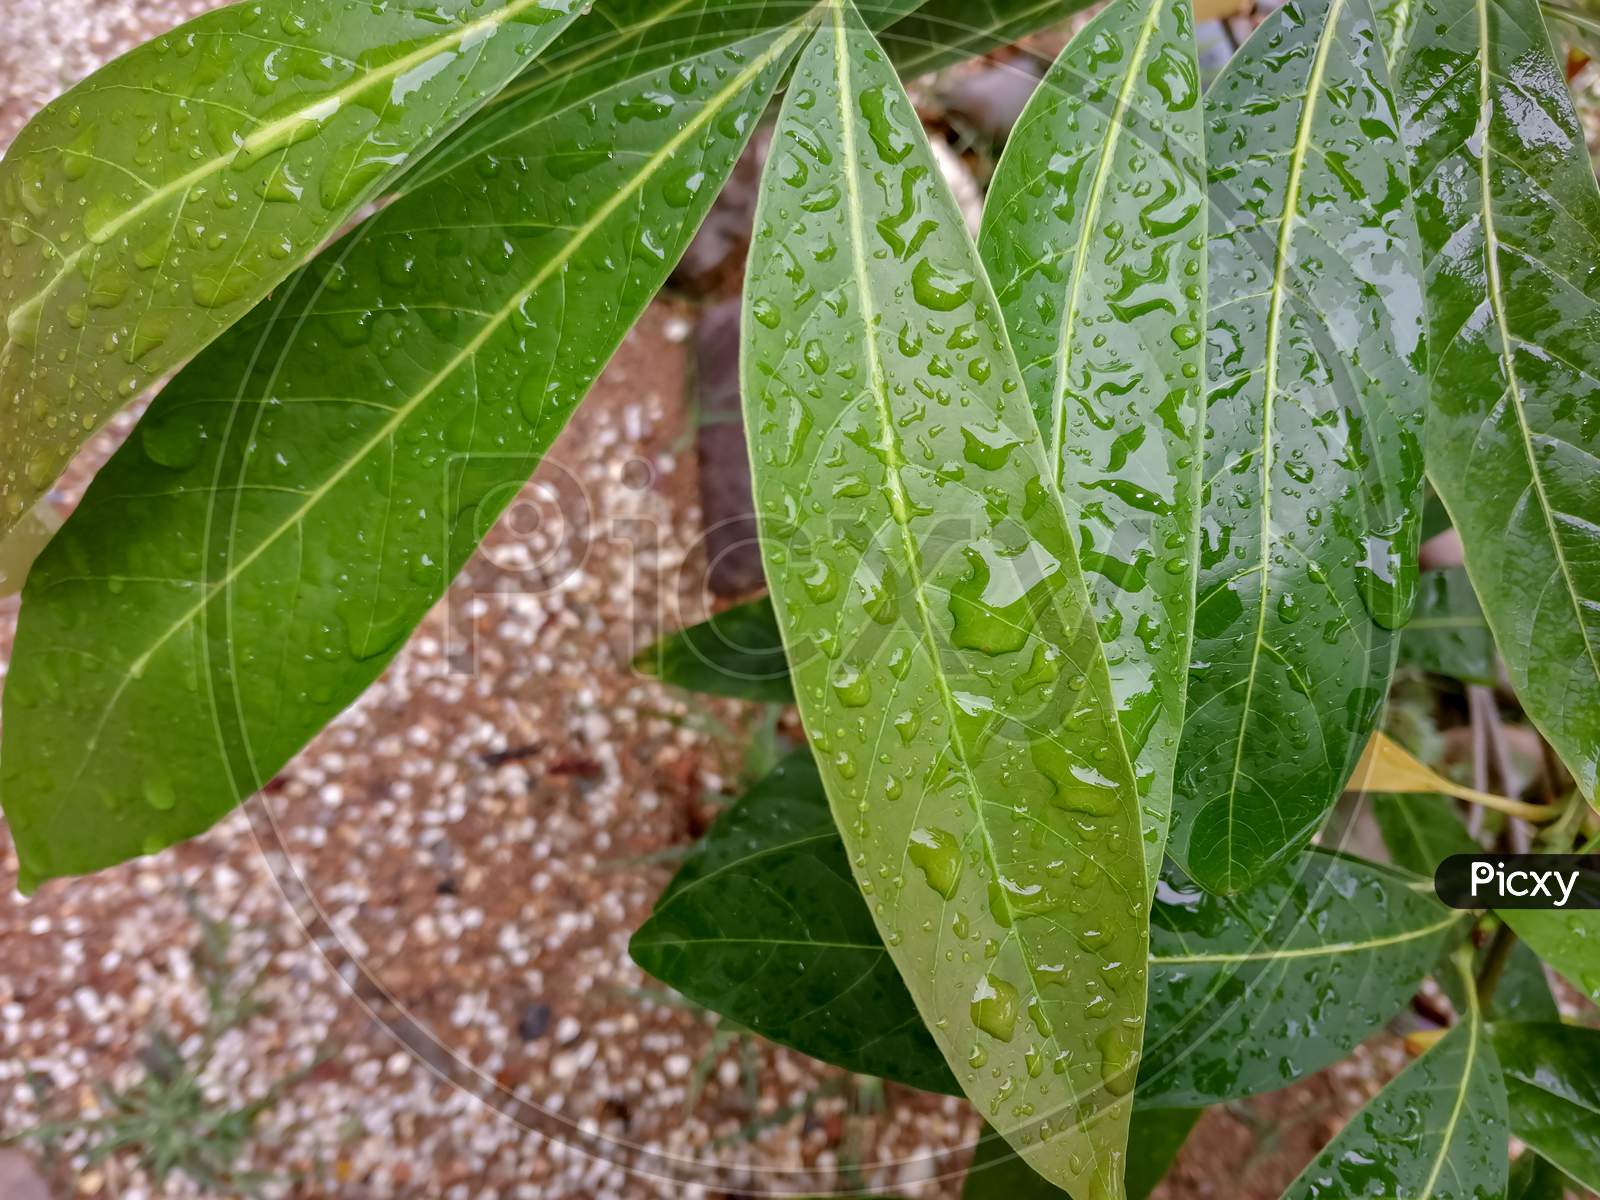 Waterdroplets on mango leaves